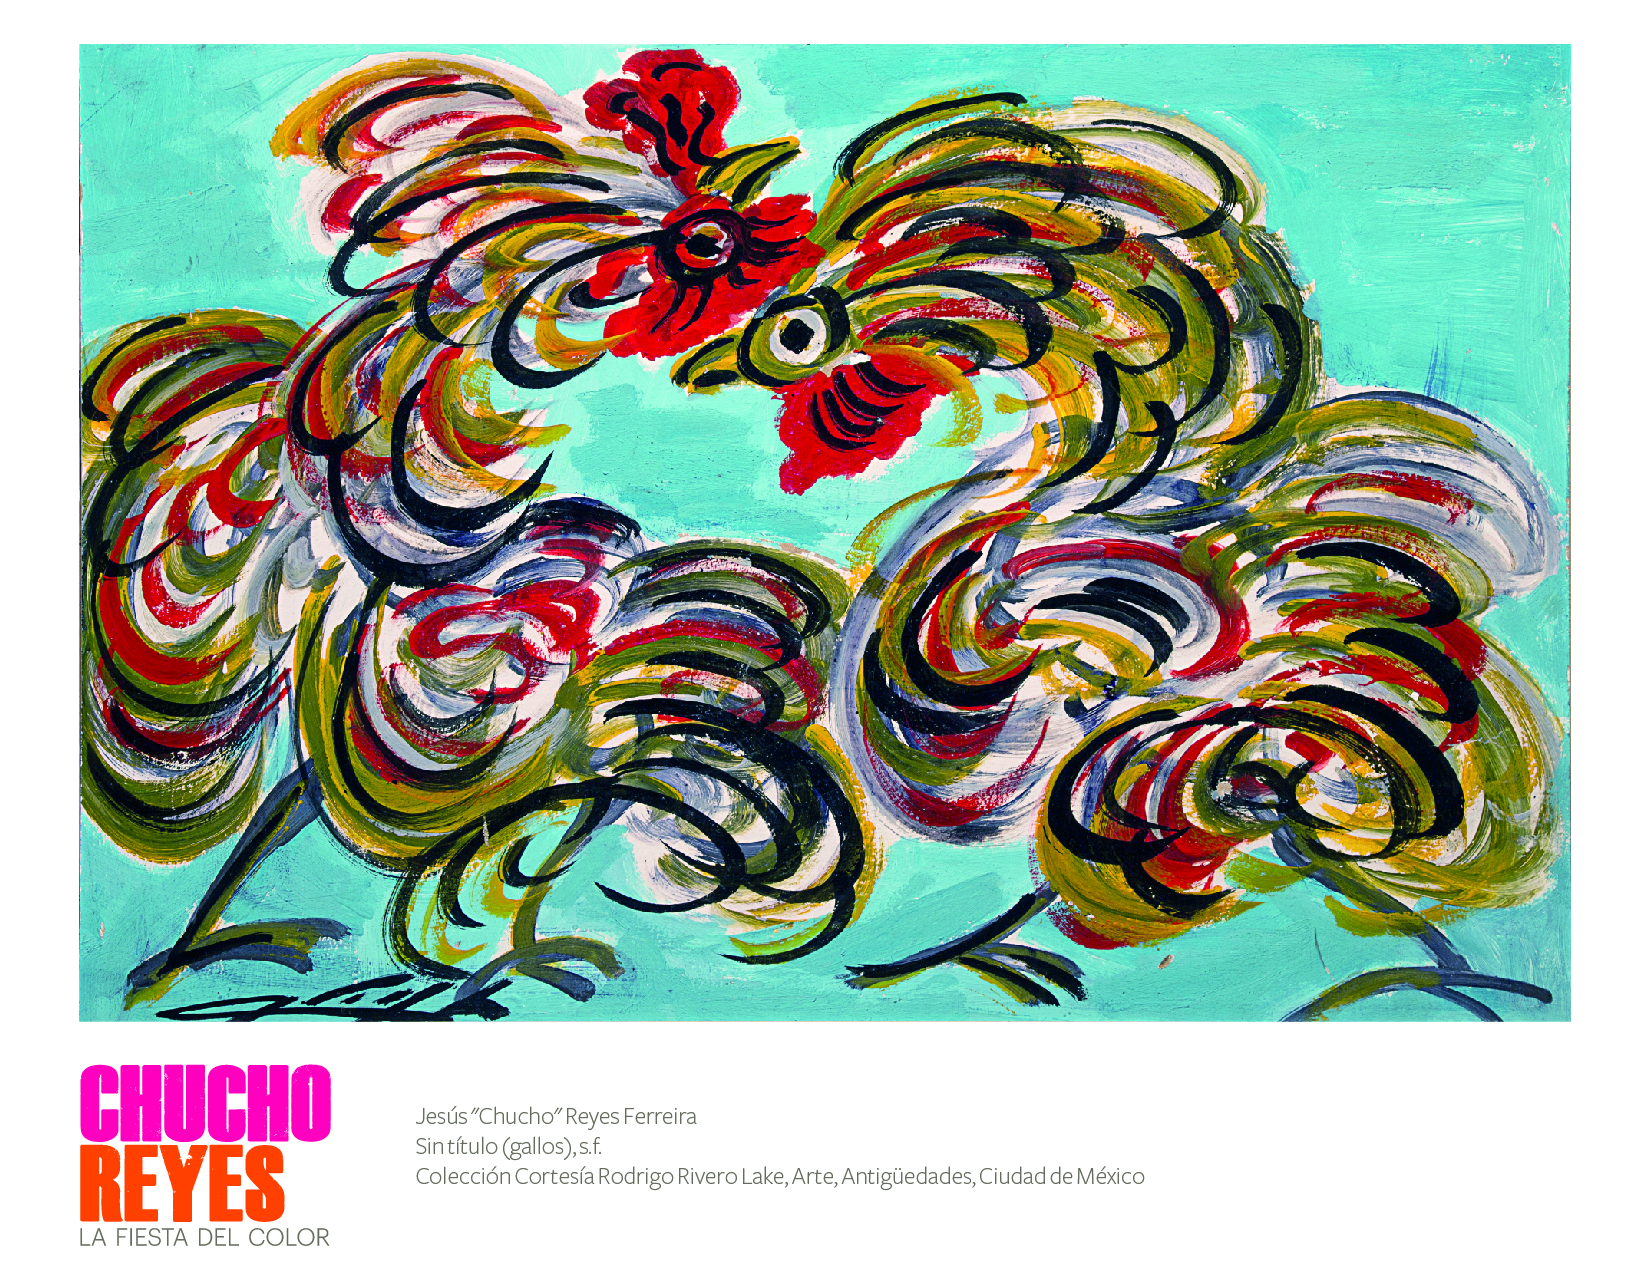 Entre gallos, santos y flores se inauguró la exhibición del artista tapatío Chucho Reyes